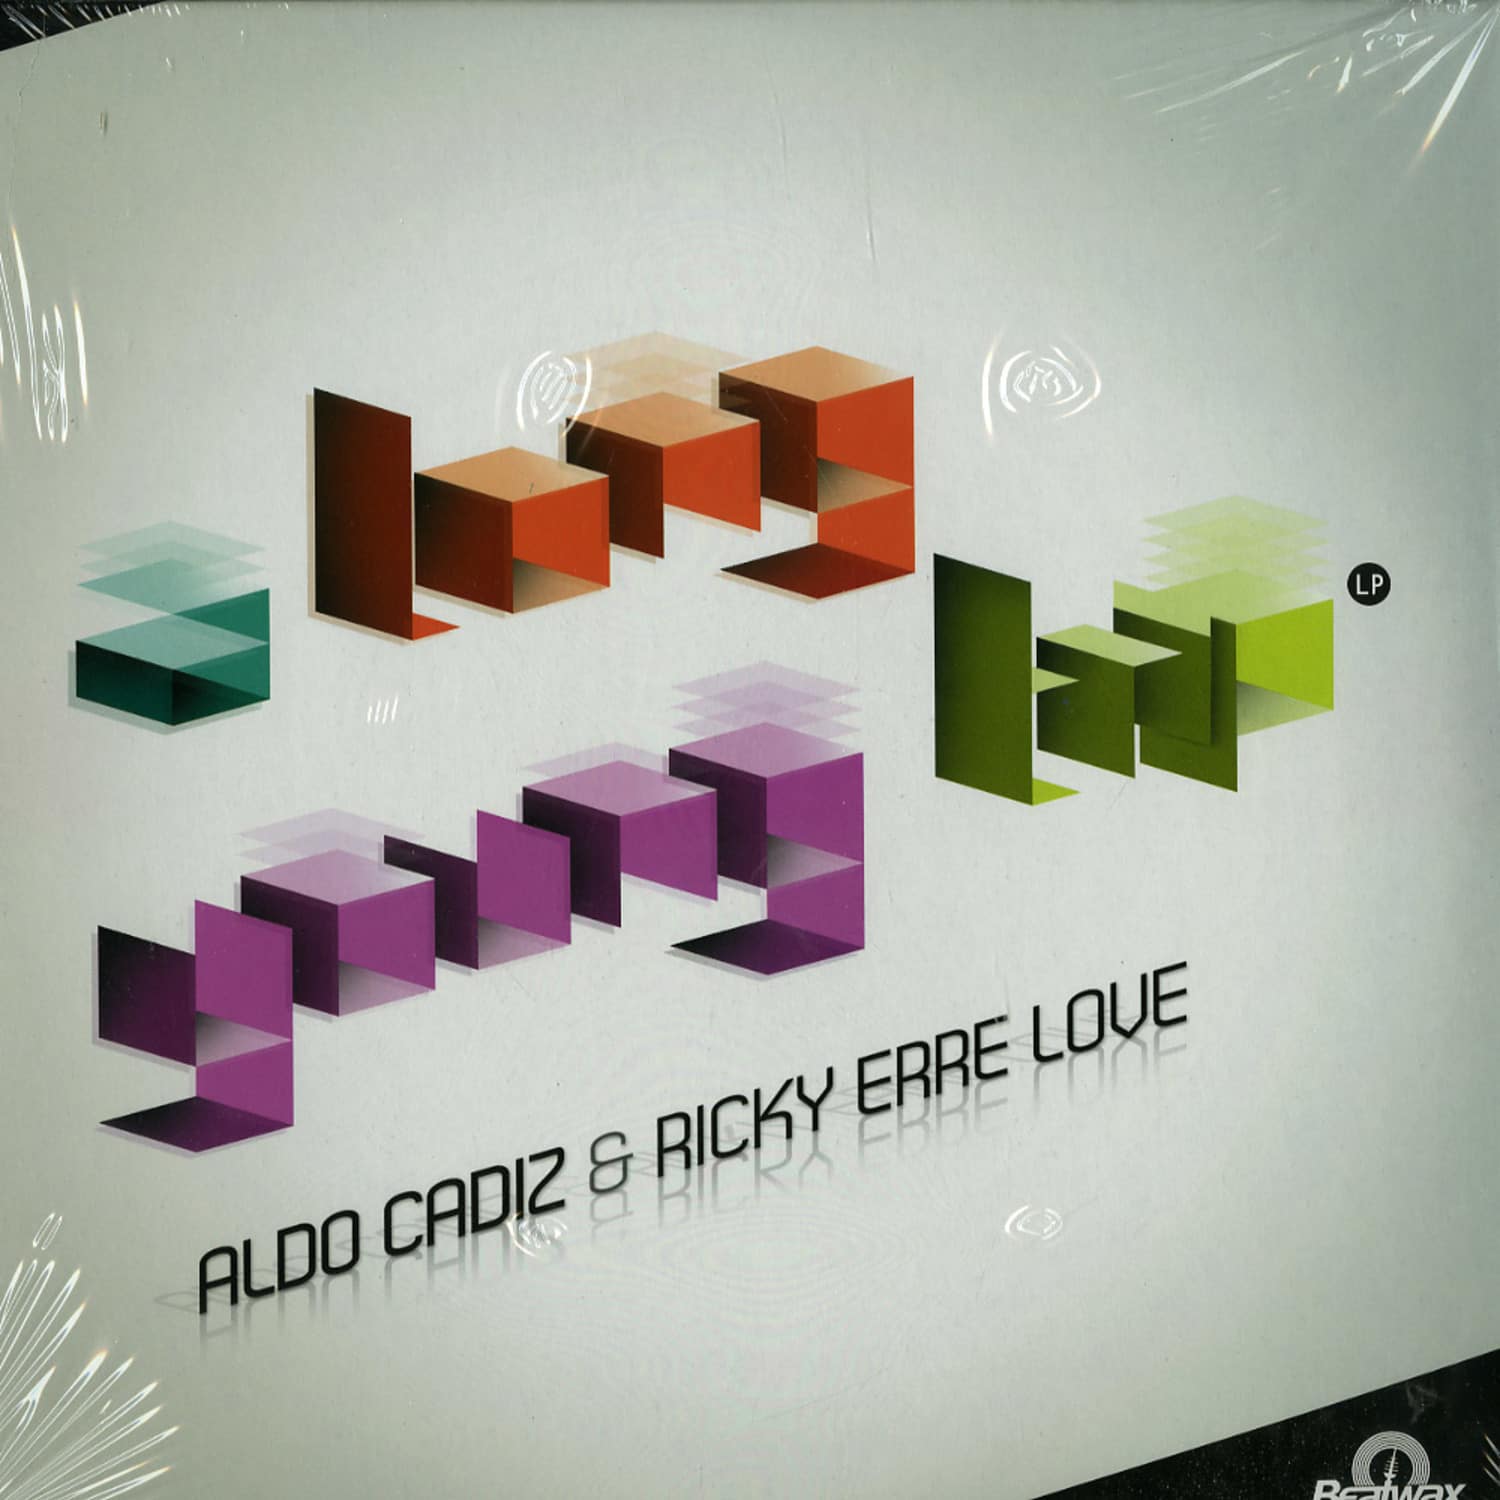 Aldo Cadiz & Ricky Erre Love - A LONG YOUNG TRIP 